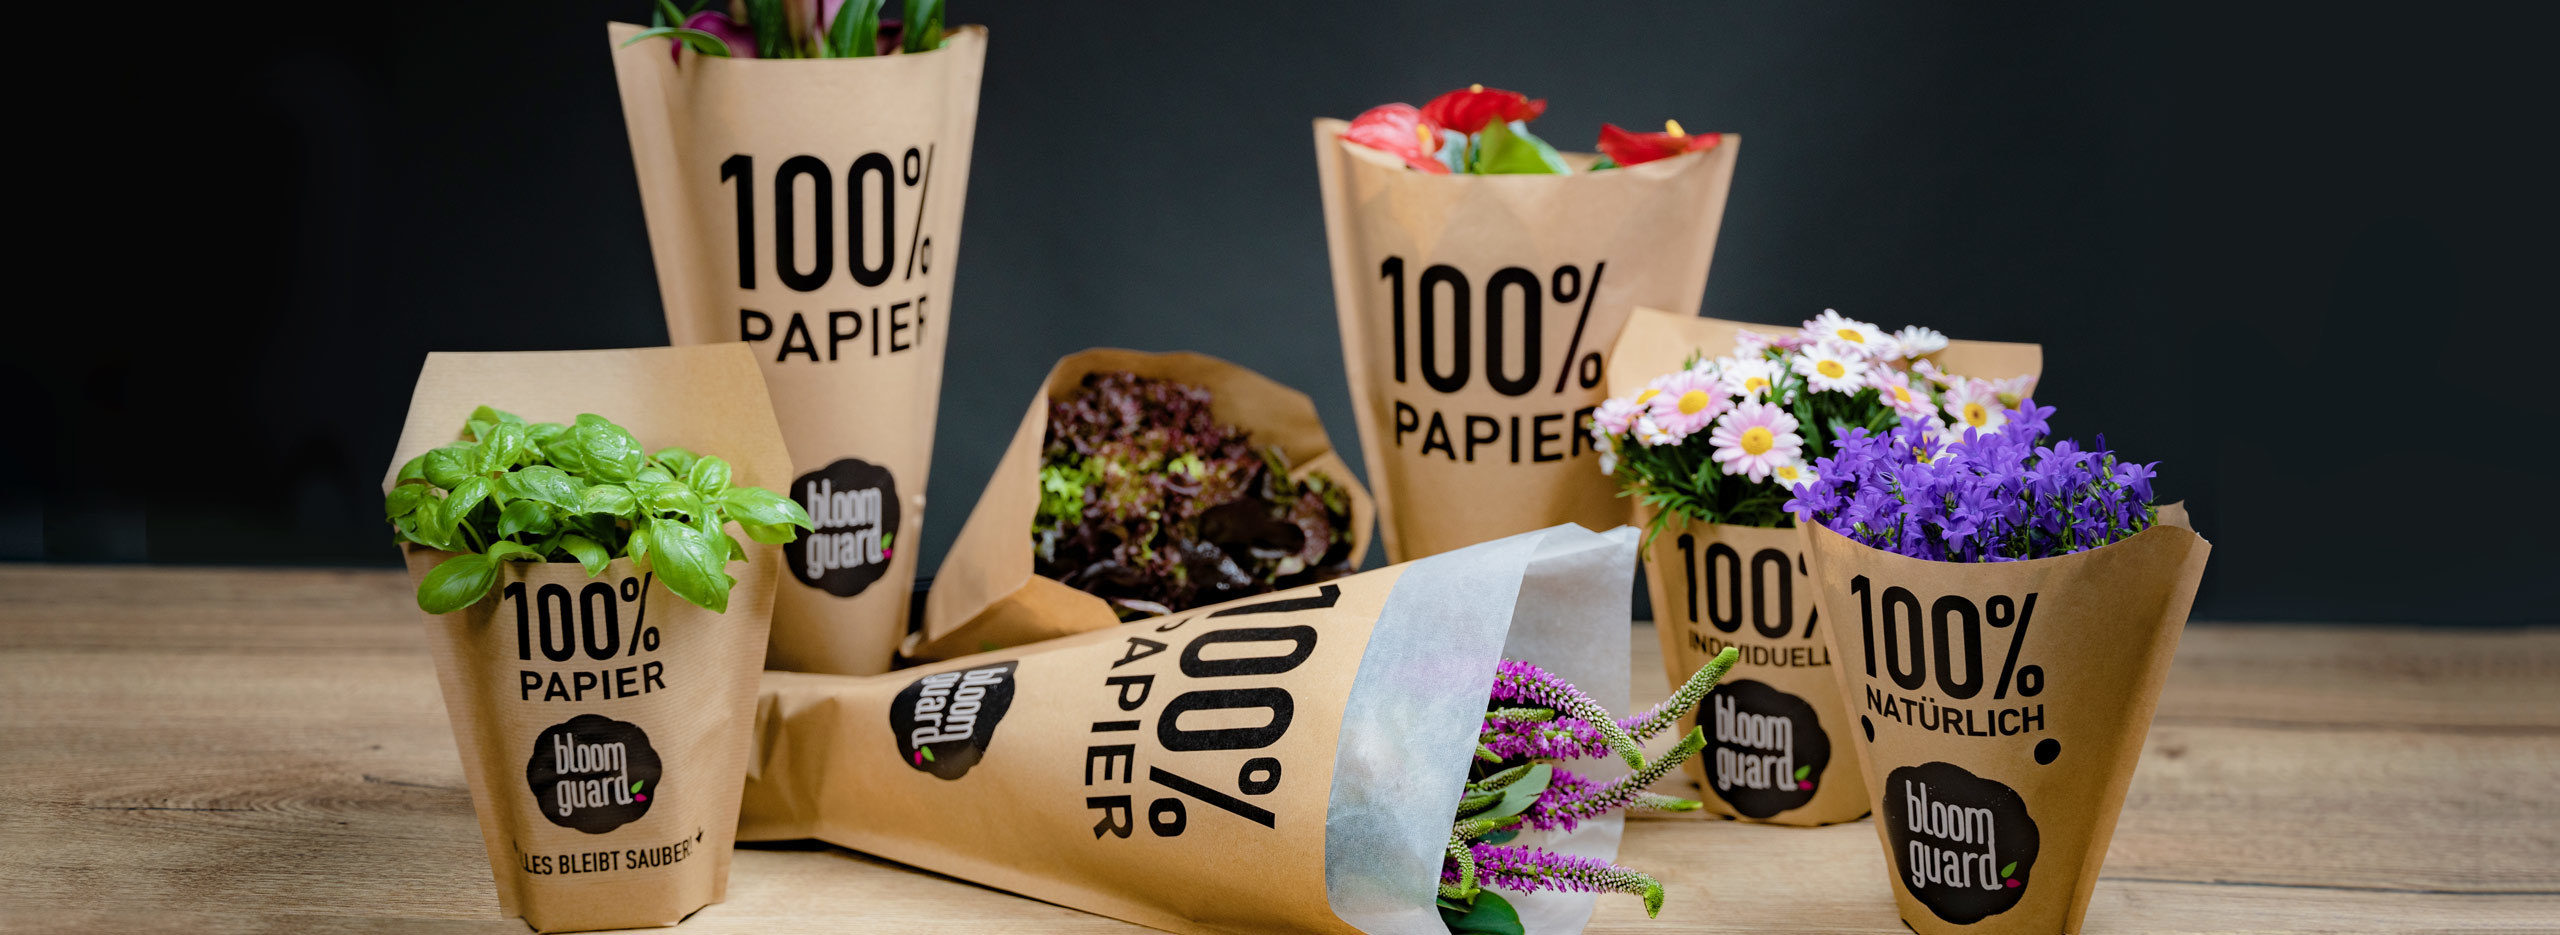 bloom guard Verpackungen für Pflanzen von WEBER Verpackungen